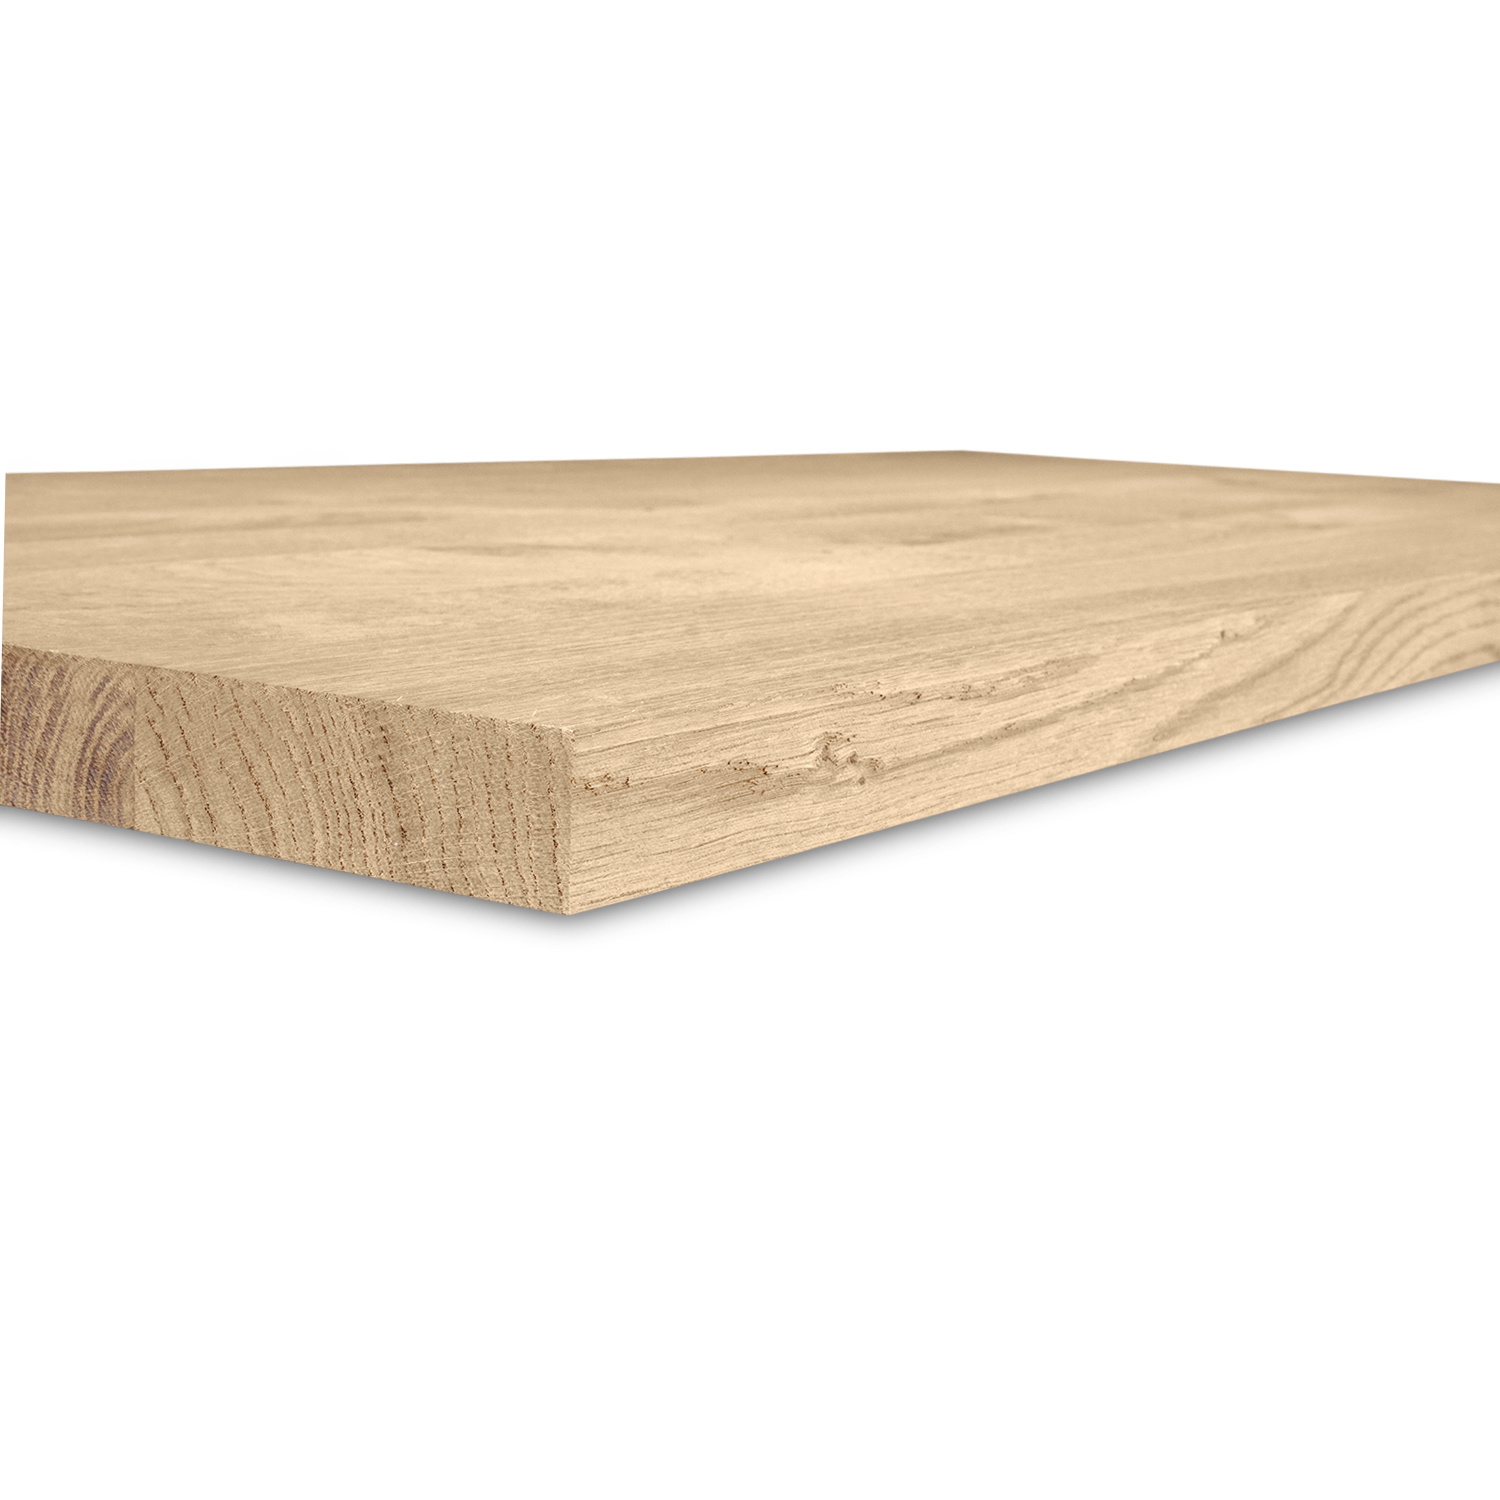  Tischplatte Eiche - 2,7 cm dick (1-Schicht) - Breite Lamellen (10 - 12 cm breit) - Eichenholz rustikal - verleimt & künstlich getrocknet (HF 8-12%) - verschiedene Größen